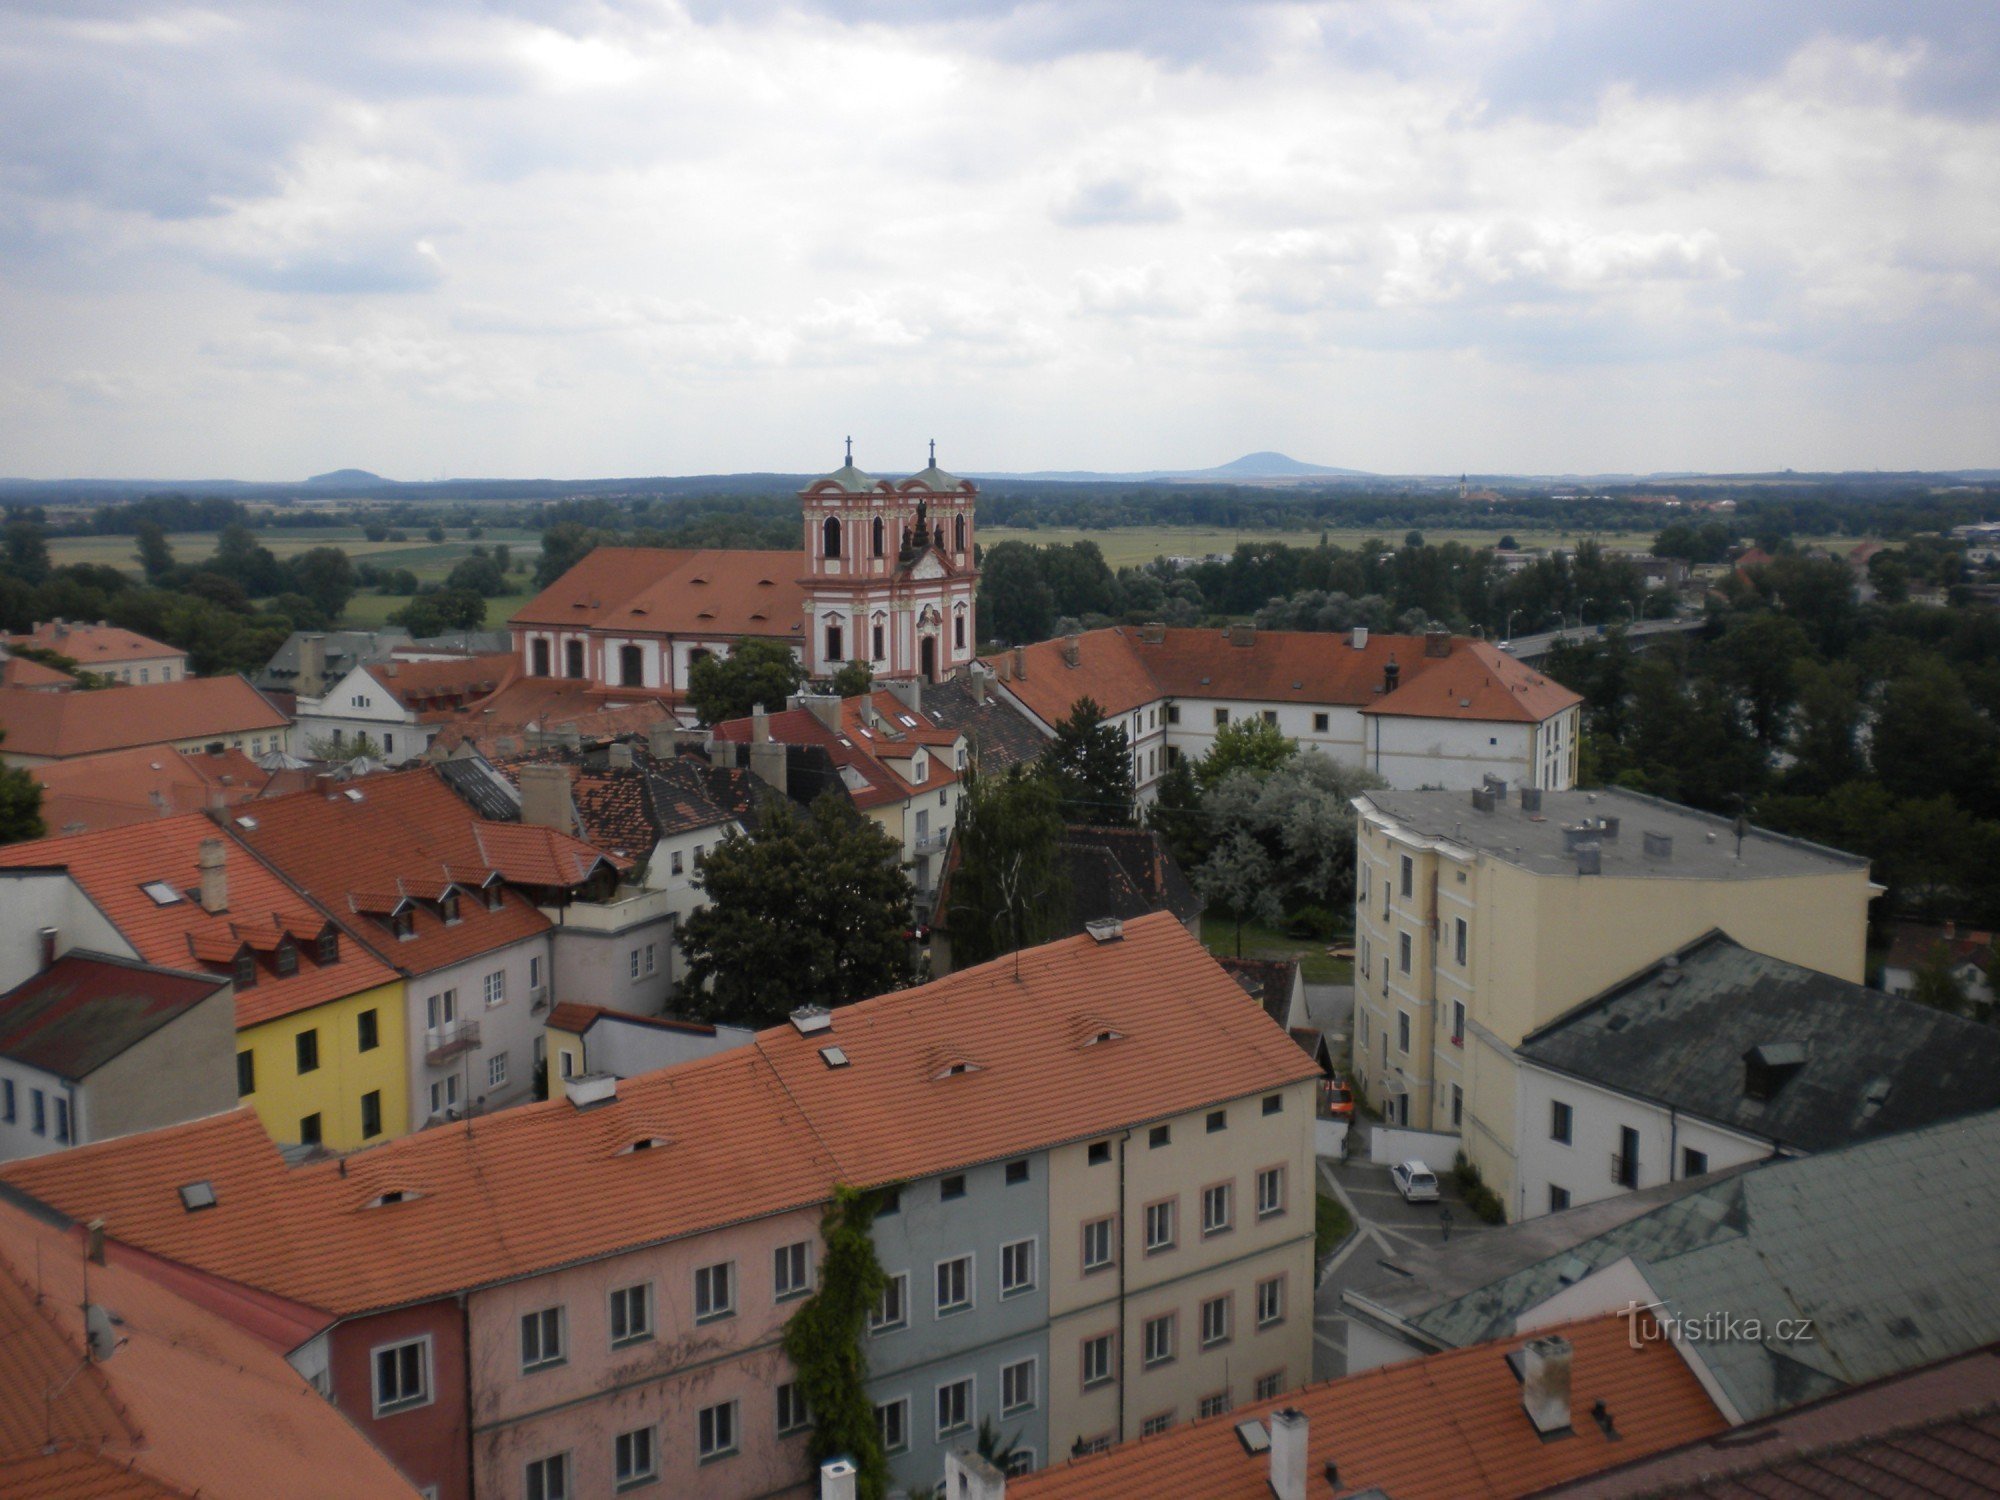 Povijesne građevine grada Litoměřice.